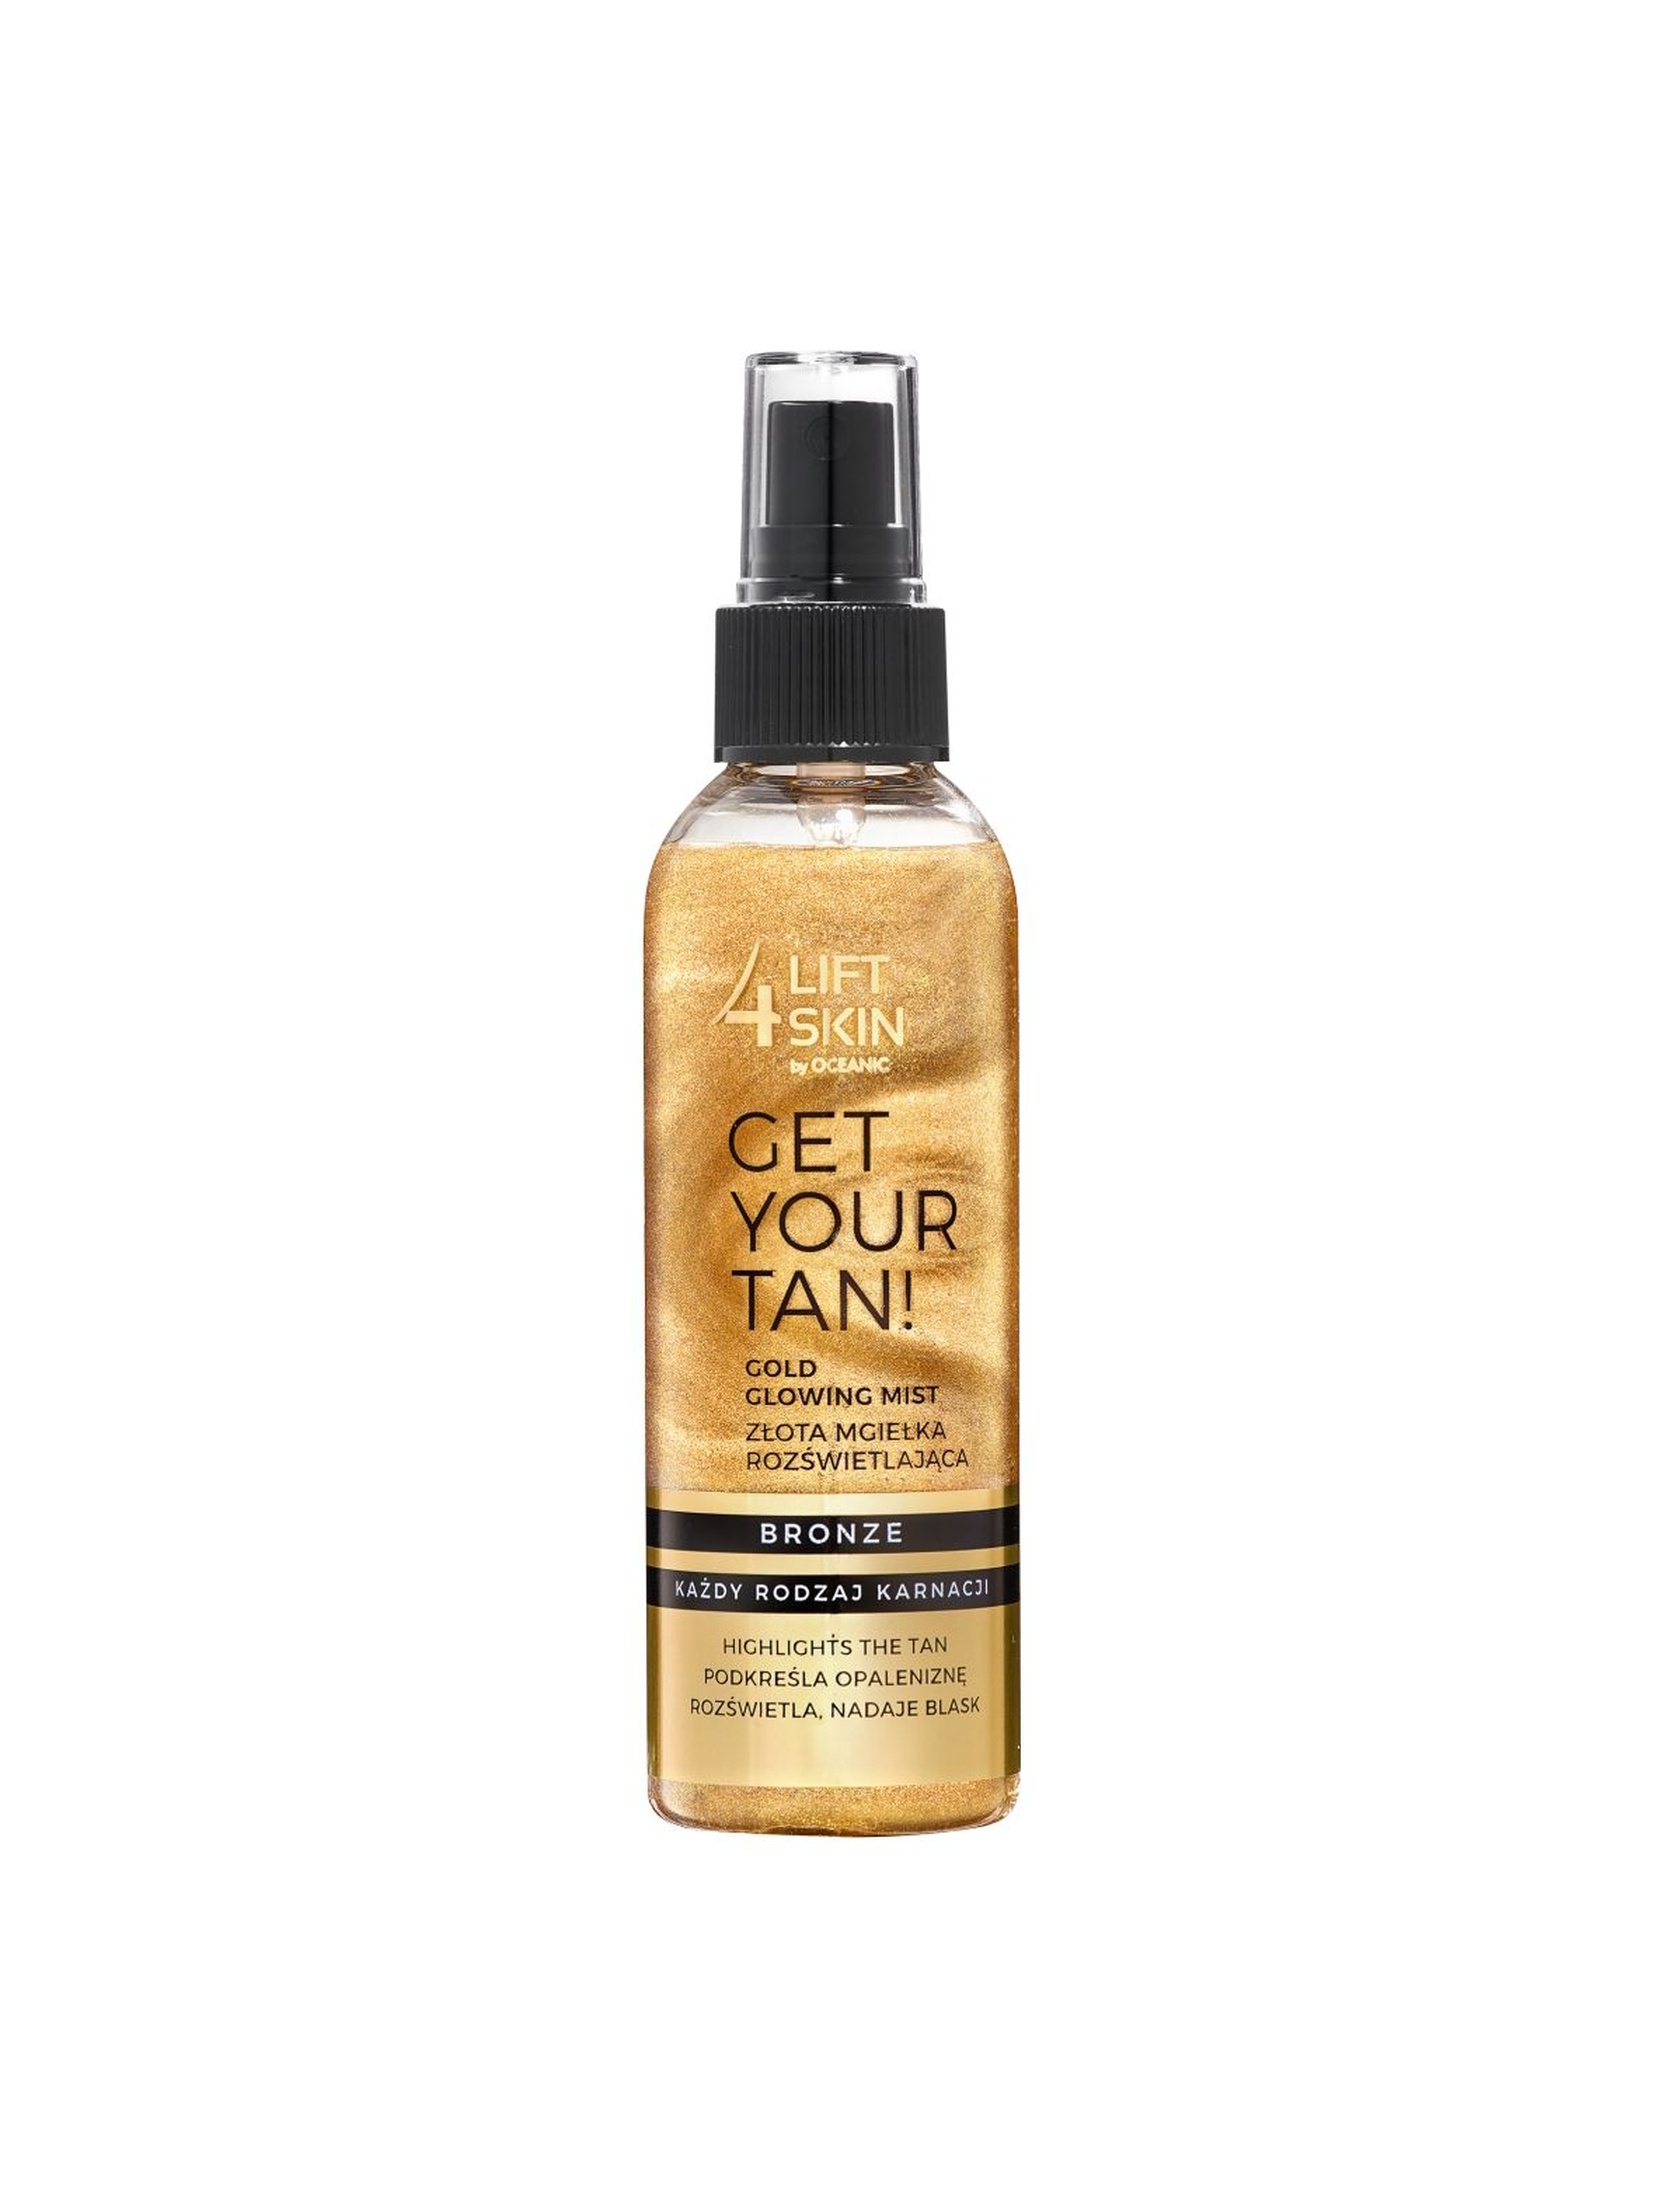 Lift4Skin Get Your Tan! złota mgiełka rozświetlająca 150 ml